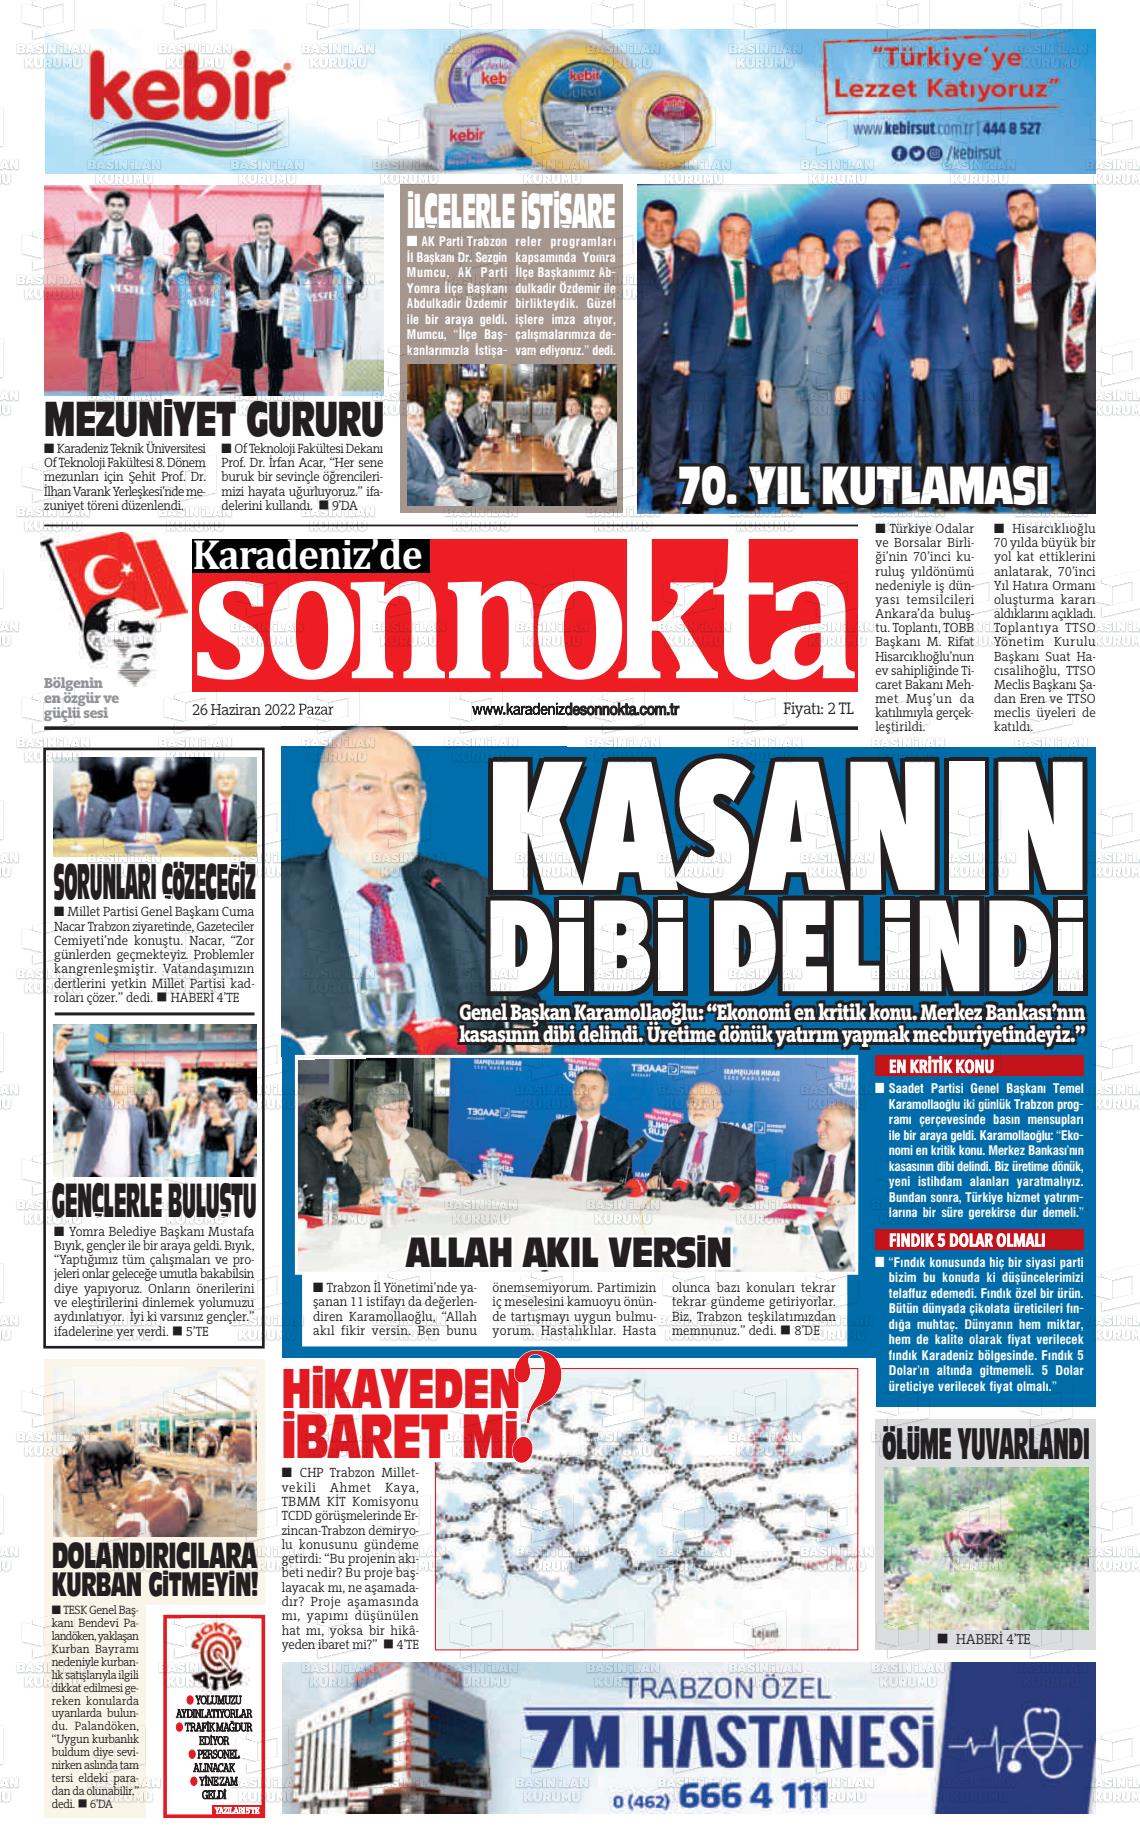 26 Haziran 2022 Karadeniz'de Sonnokta Gazete Manşeti